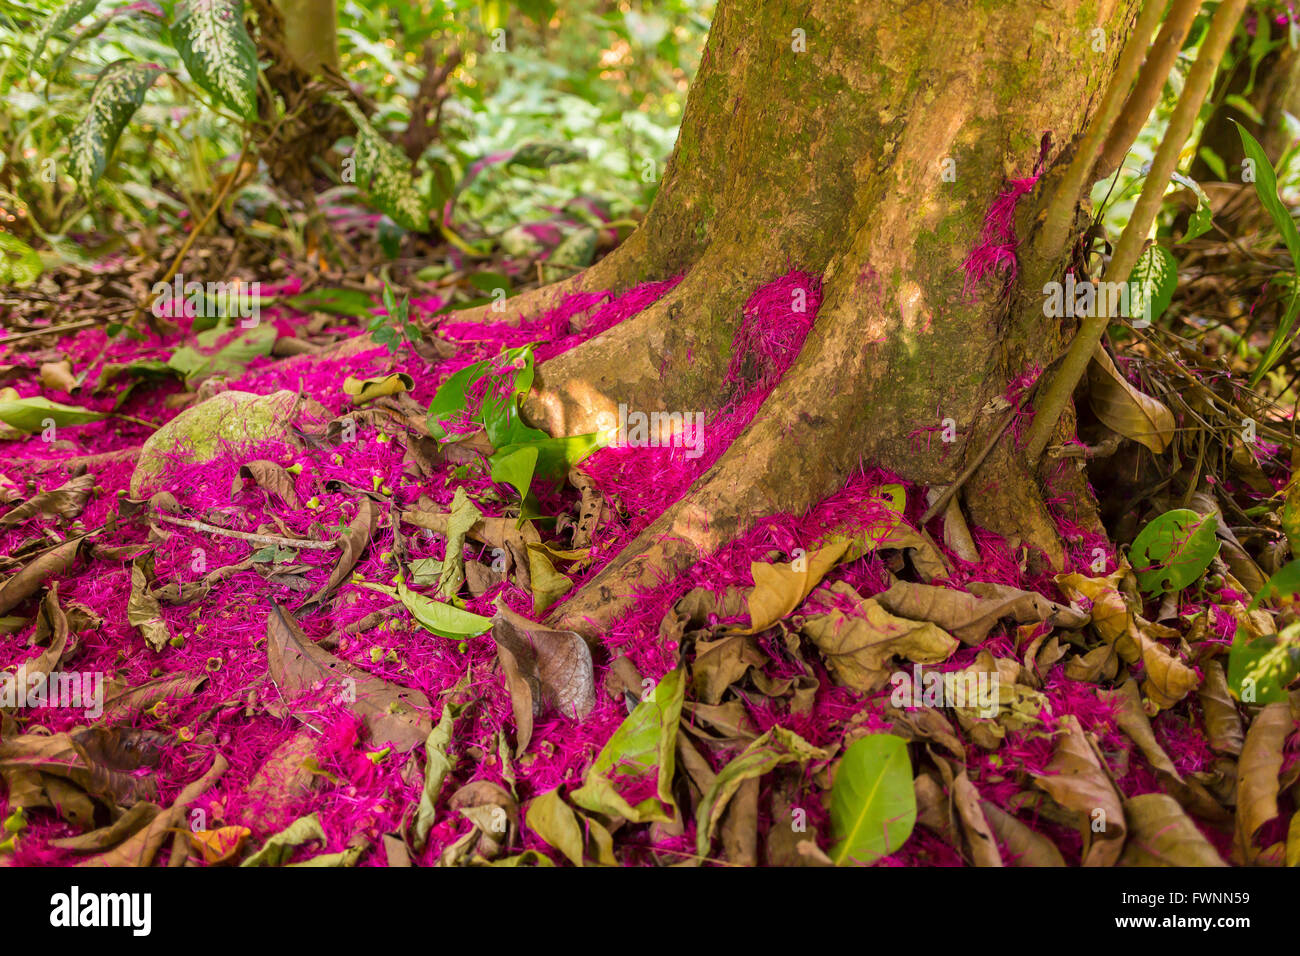 Péninsule de Osa, COSTA RICA - sol de la forêt tropicale, avec des pétales de fleurs du pommier de l'eau. Syzygium malaccensis Banque D'Images